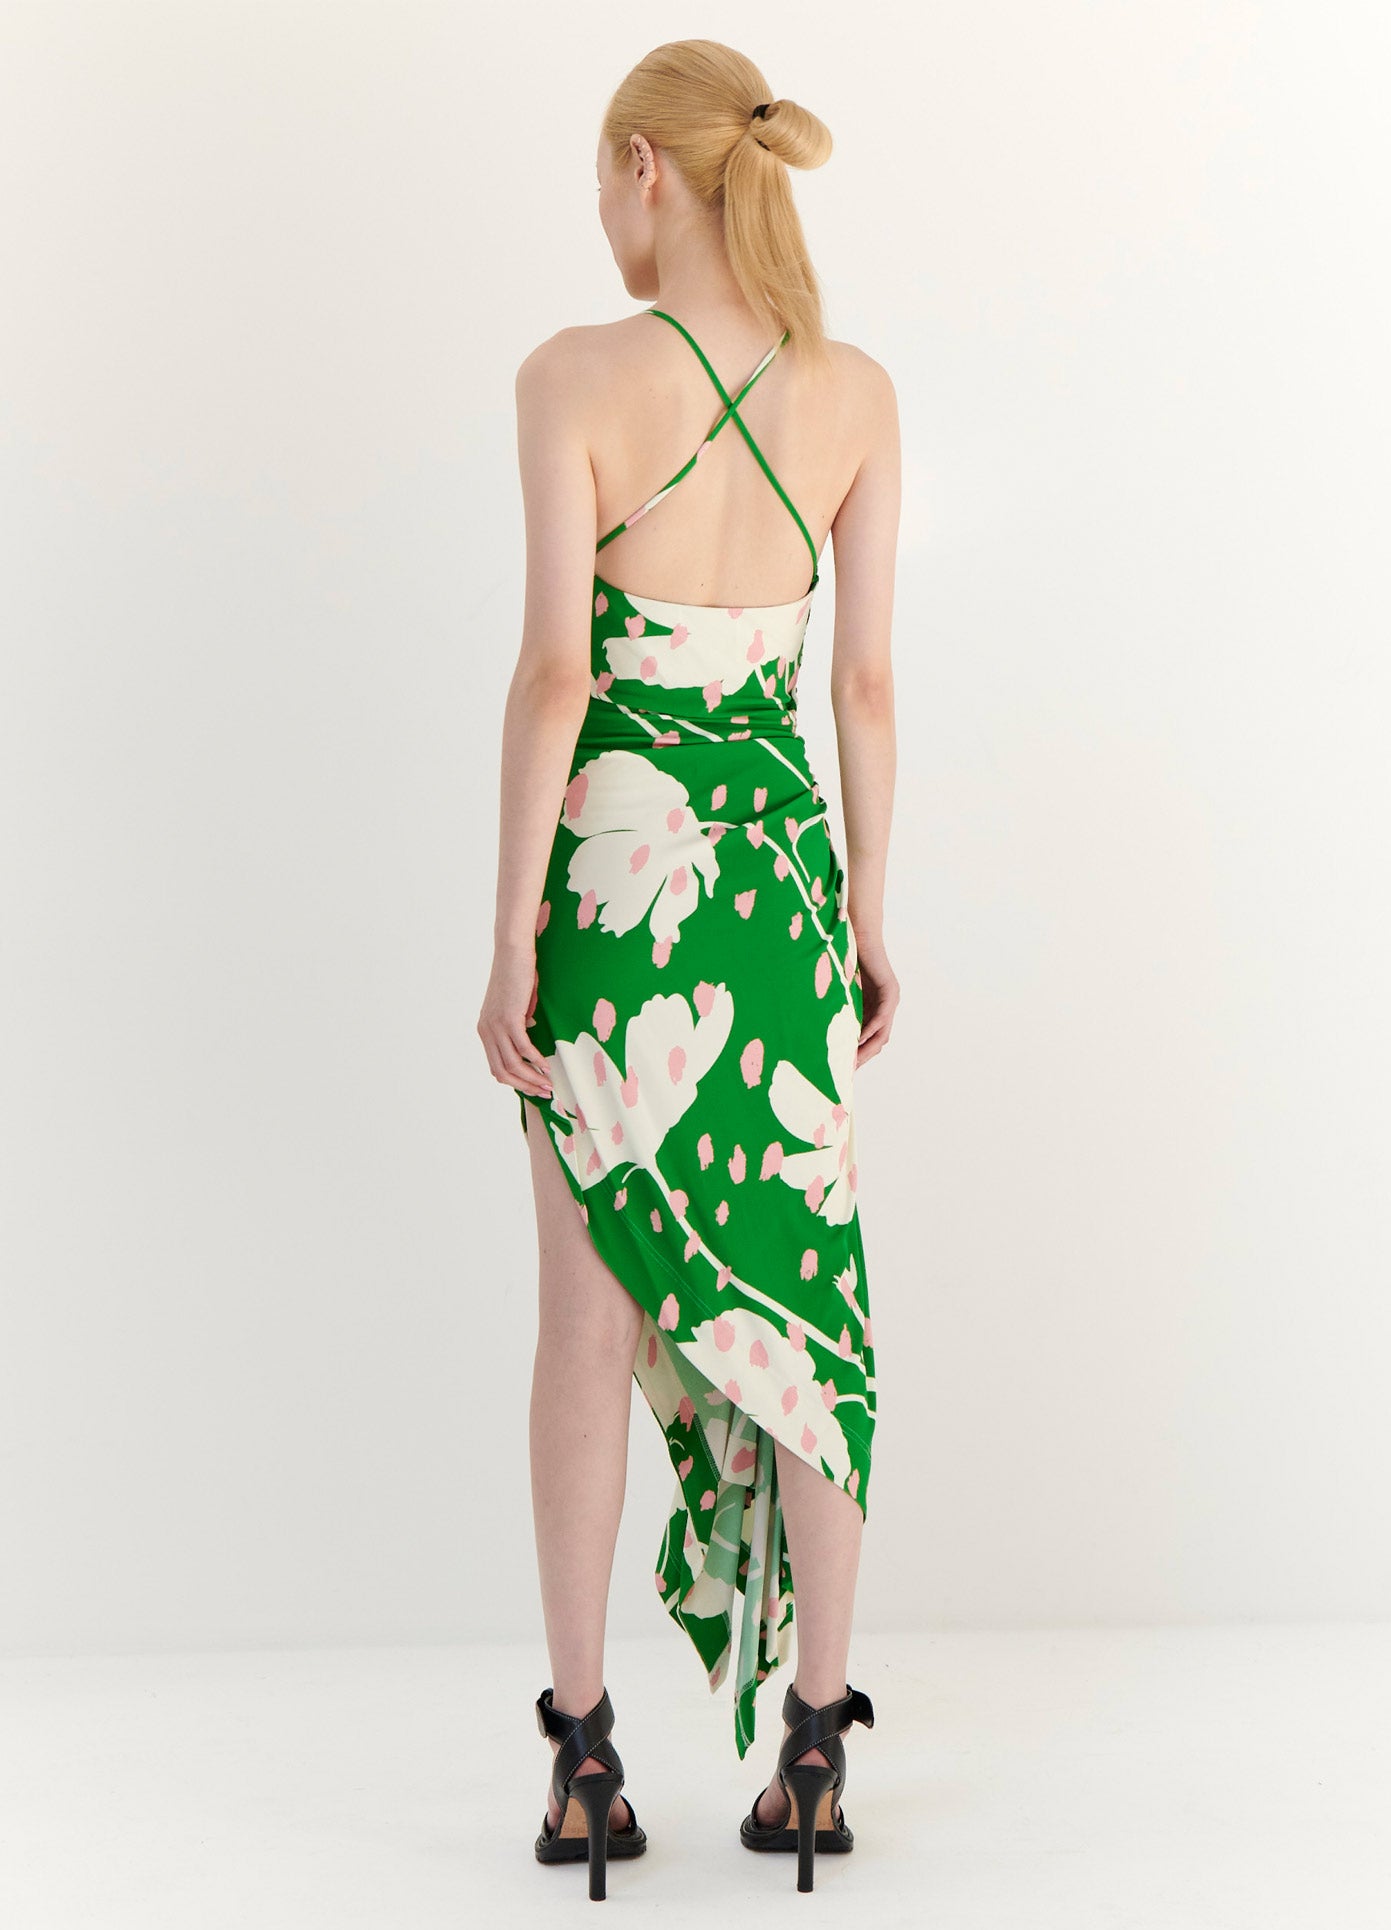 MONSE Floral Print Draped Slip Dress in Green Multi on Model Full Back View